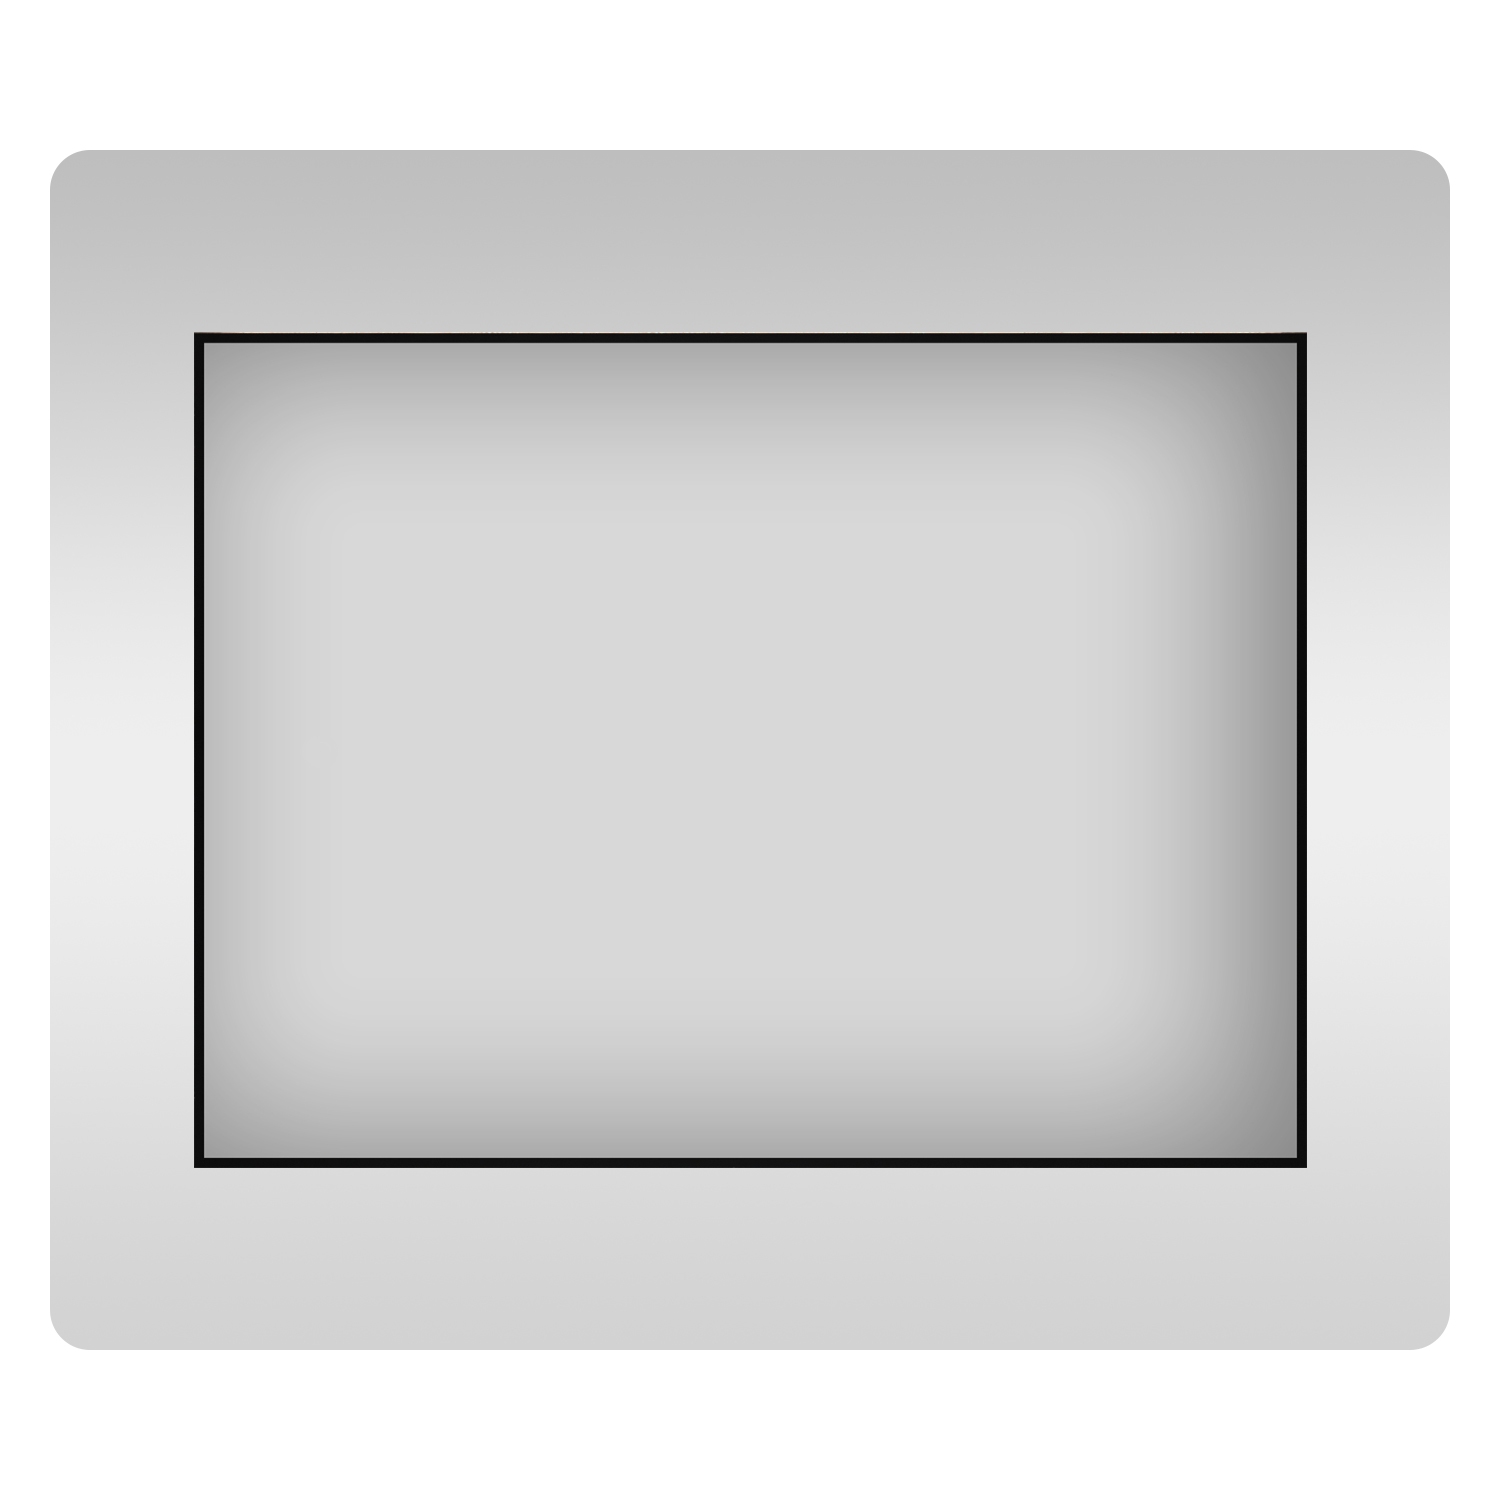 Влагостойкое прямоугольное зеркало Wellsee 7 Rays' Spectrum 172200570, 75х50 см